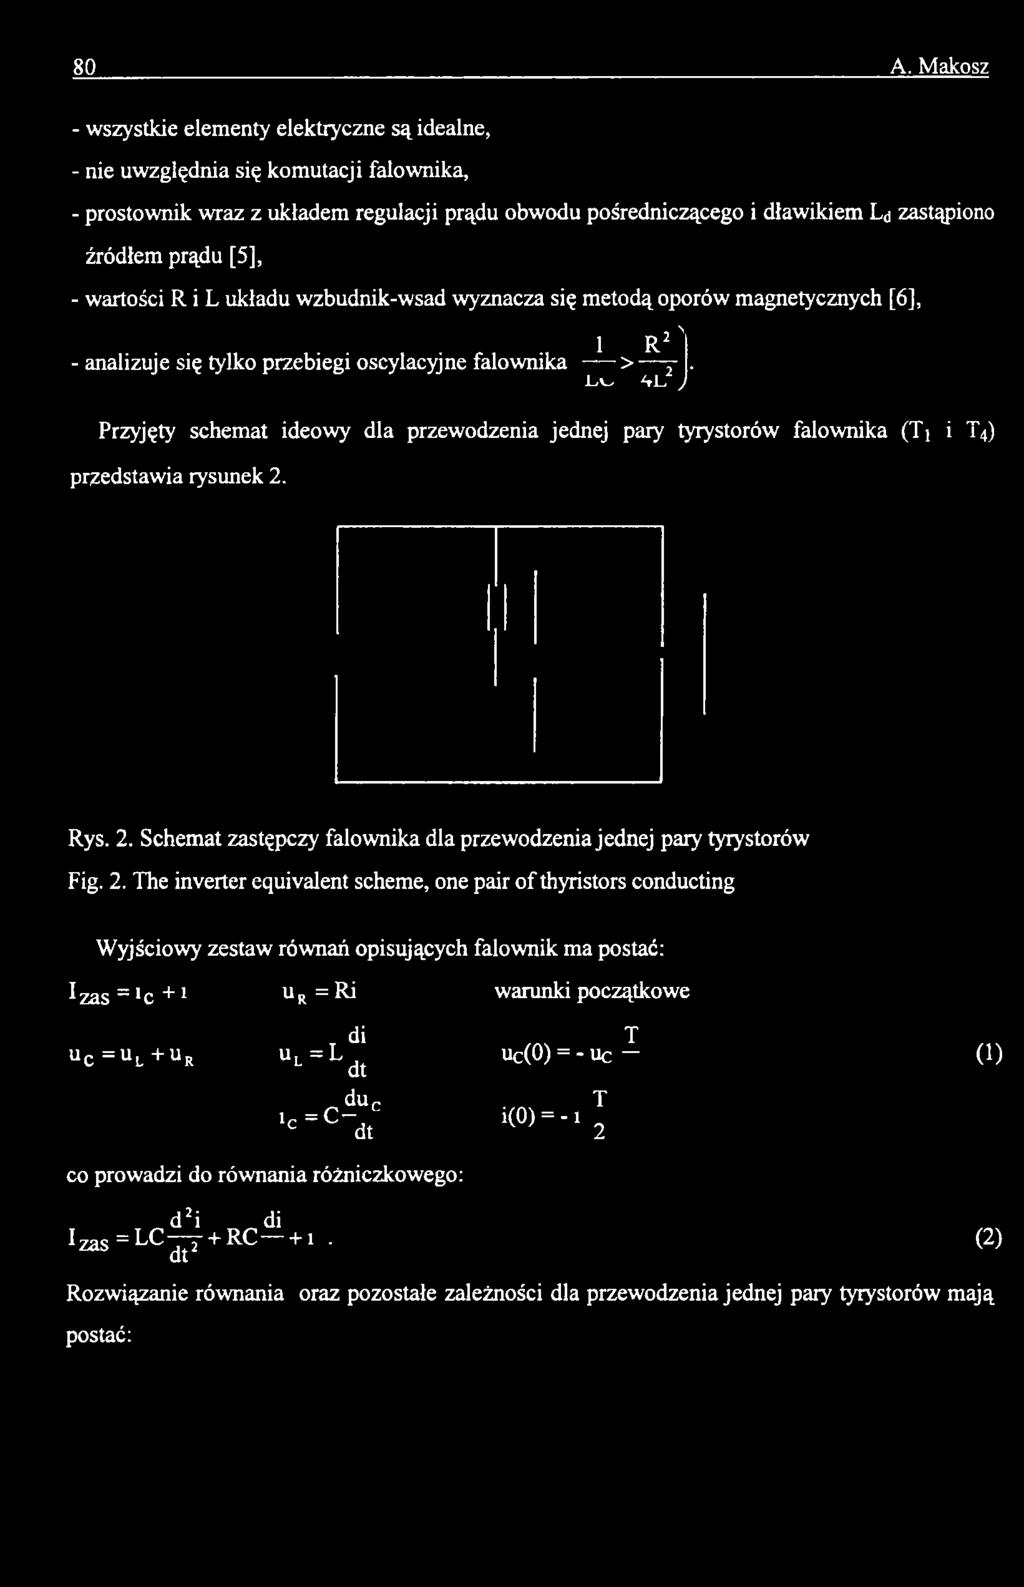 -L<V-/ ^rj_< y Przyjęty schemat ideowy dla przewodzenia jednej pary tyrystorów falownika (Ti i T4) przedstawia rysunek 2. Rys. 2. Schemat zastępczy falownika dla przewodzenia jednej pary tyrystorów Fig.